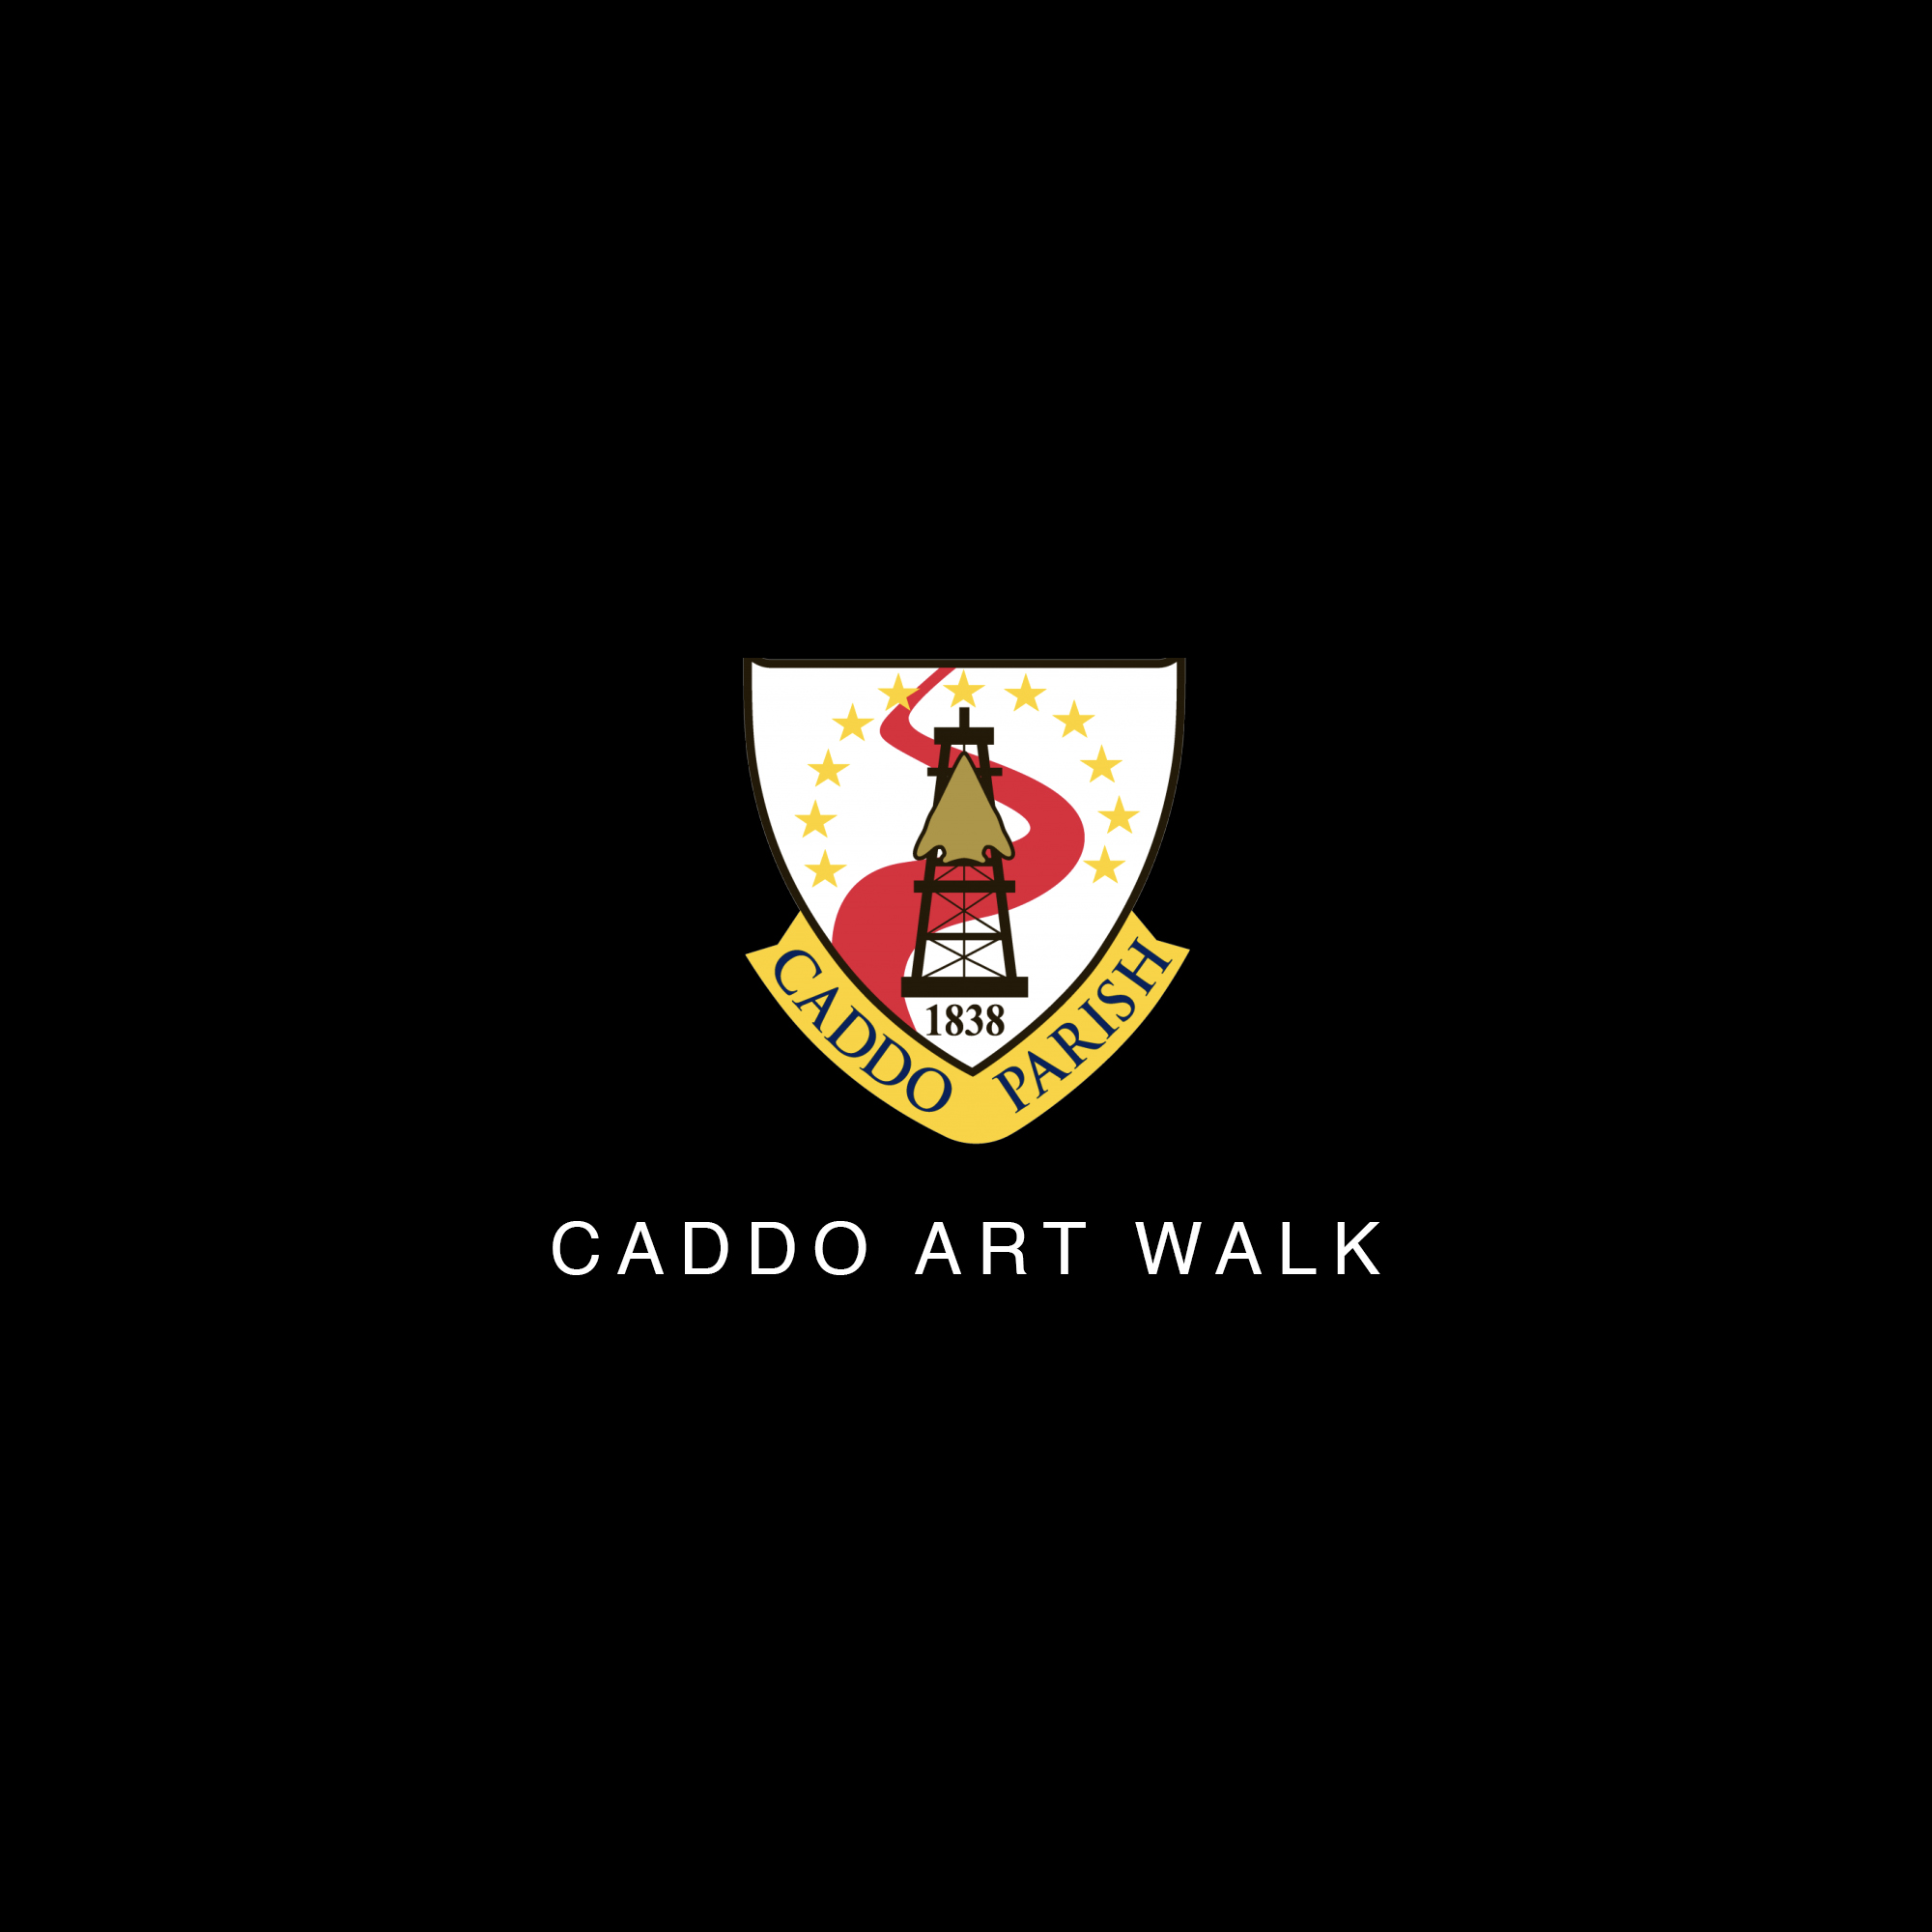 CADDO ART WALK